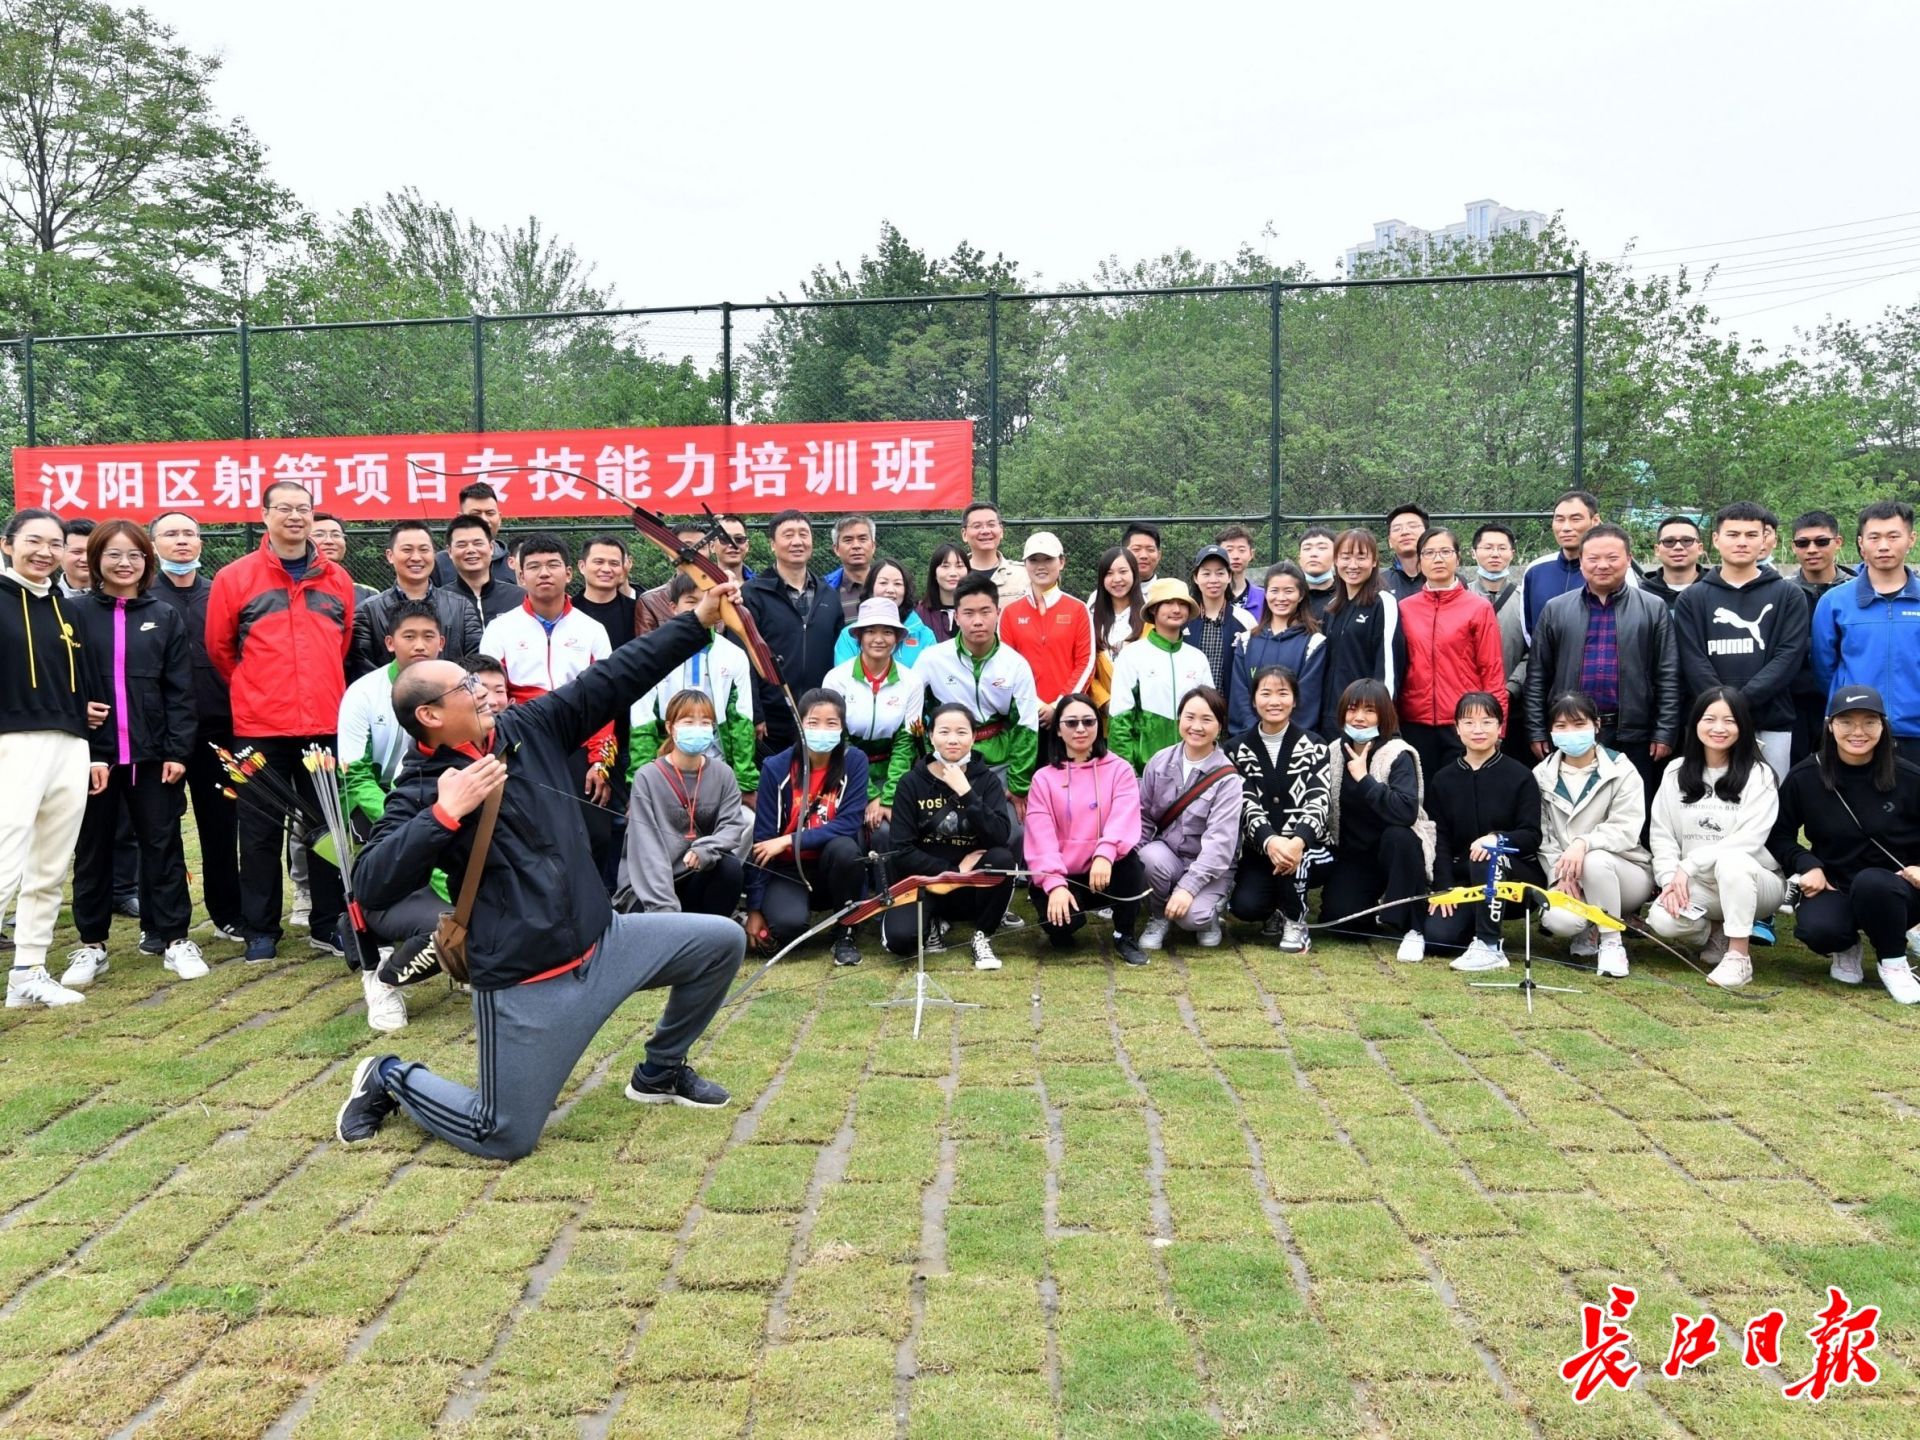 推广射箭运动 武汉体育老师跟着全国冠军学射箭